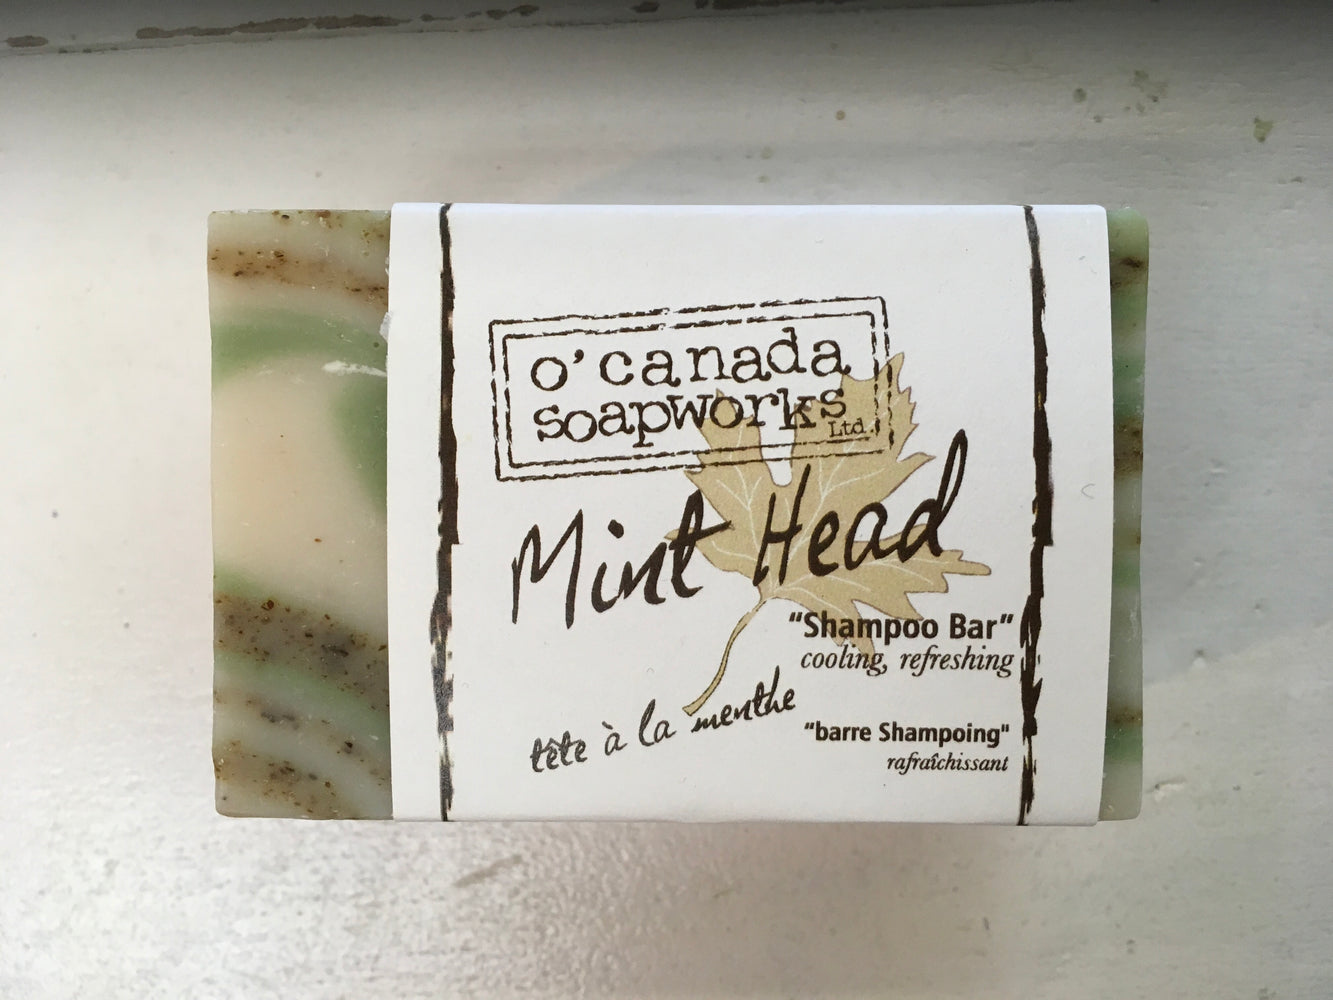 Mint Head Shampoo Bar